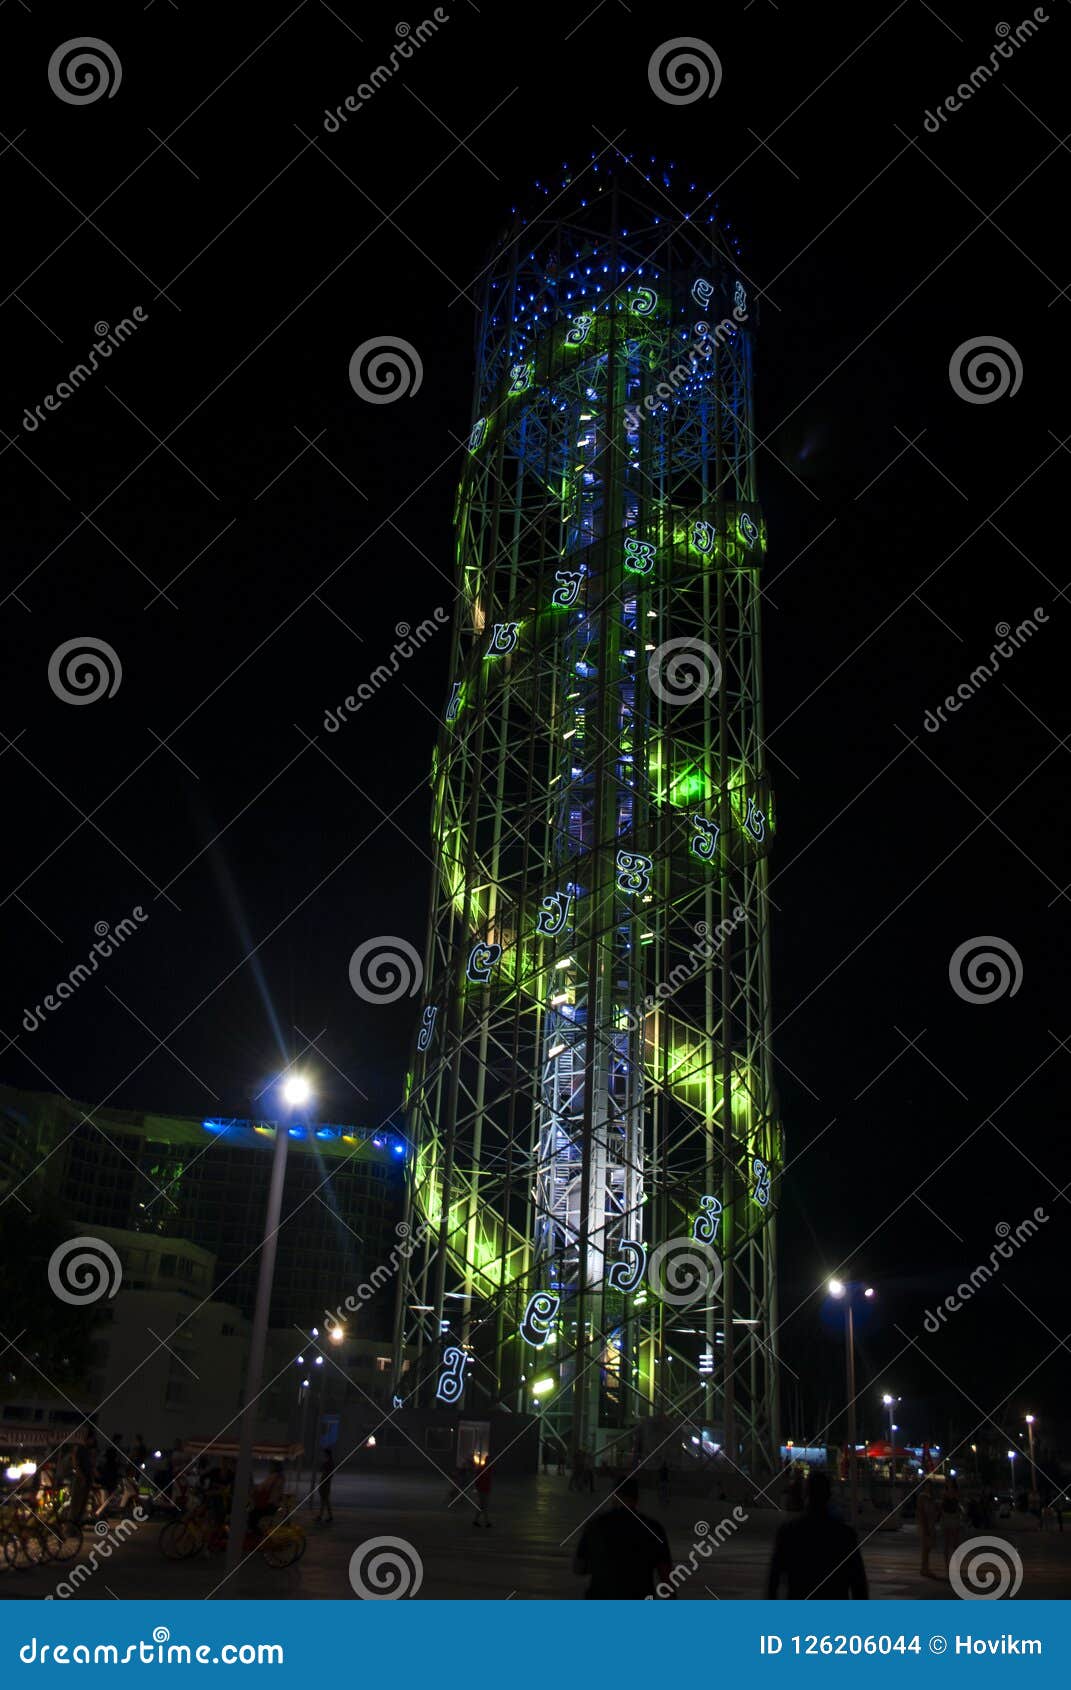 alphabetic tower of batumi in the night, georgia